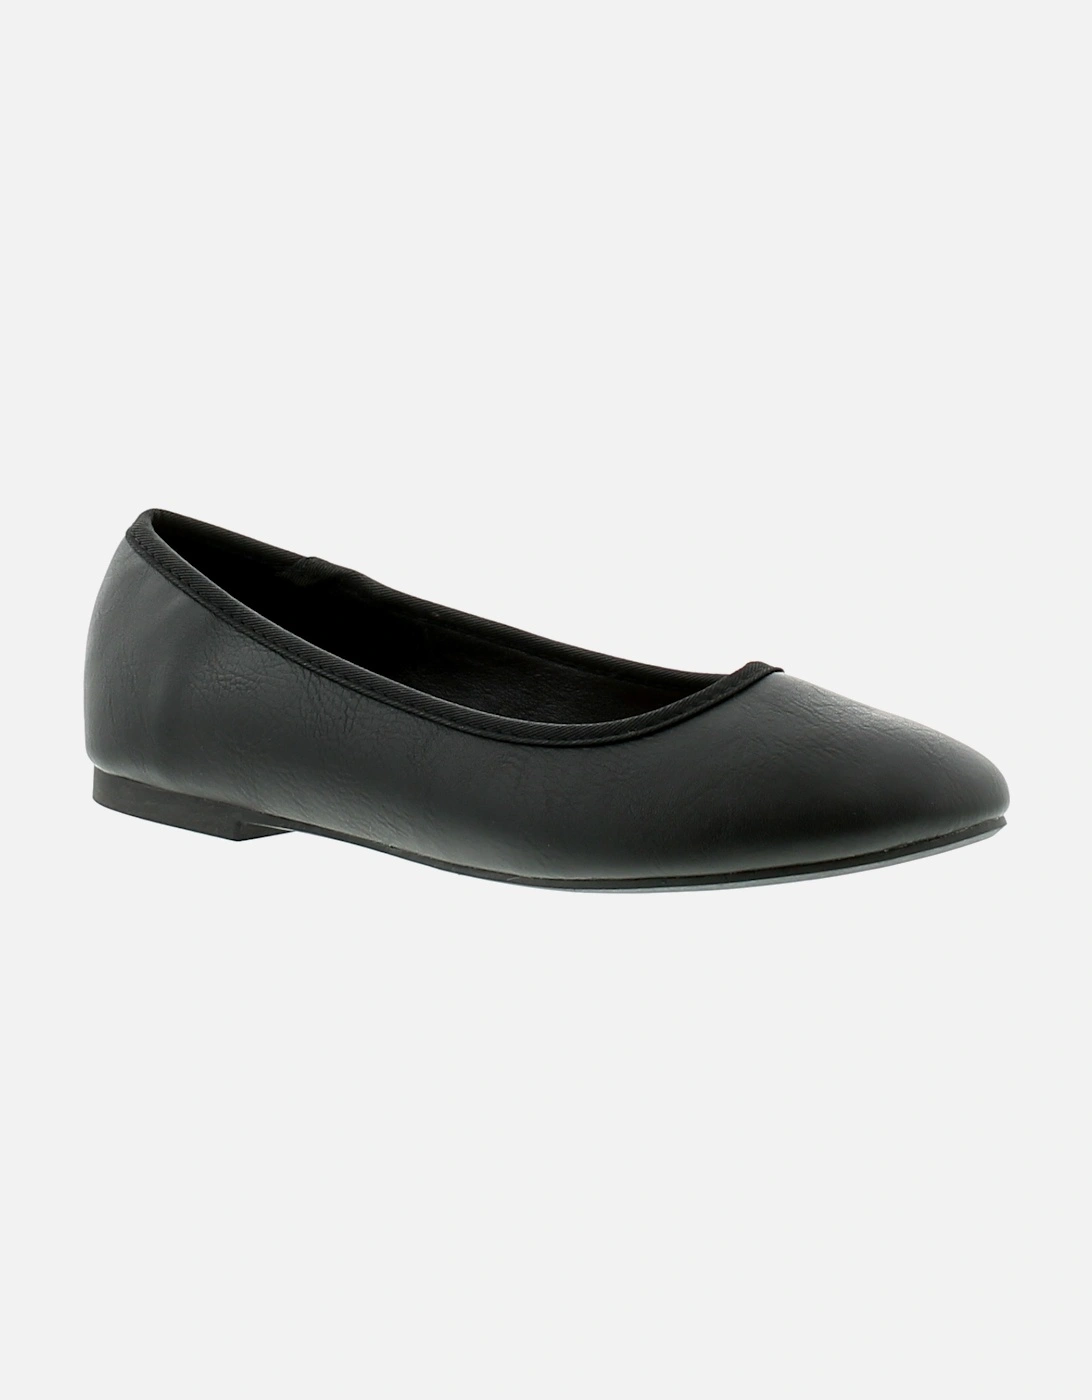 Womens Flat Shoes Christina Slip On black UK Size, 6 of 5